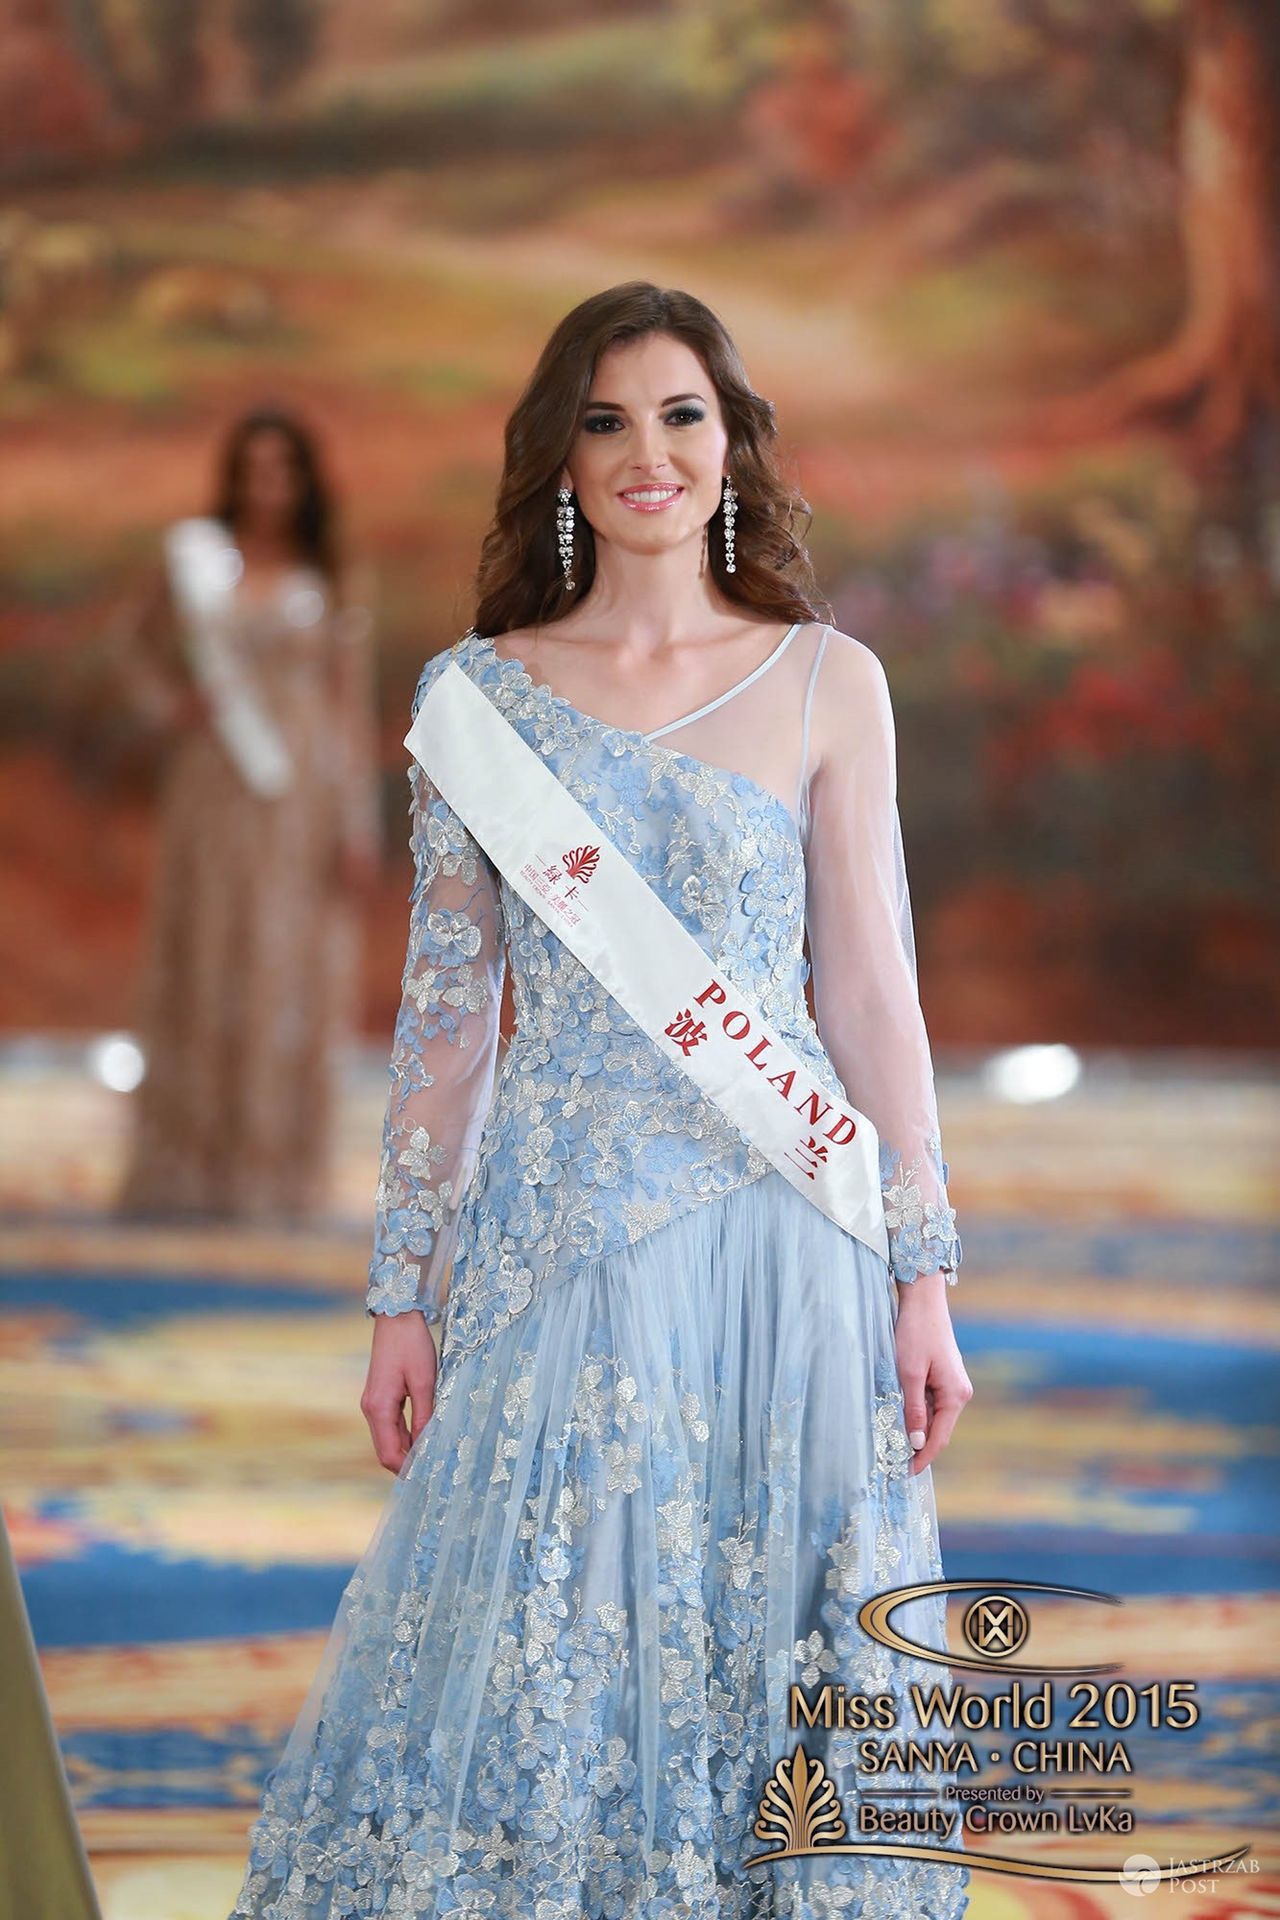 Marta Pałucka - Miss World Poland 2015